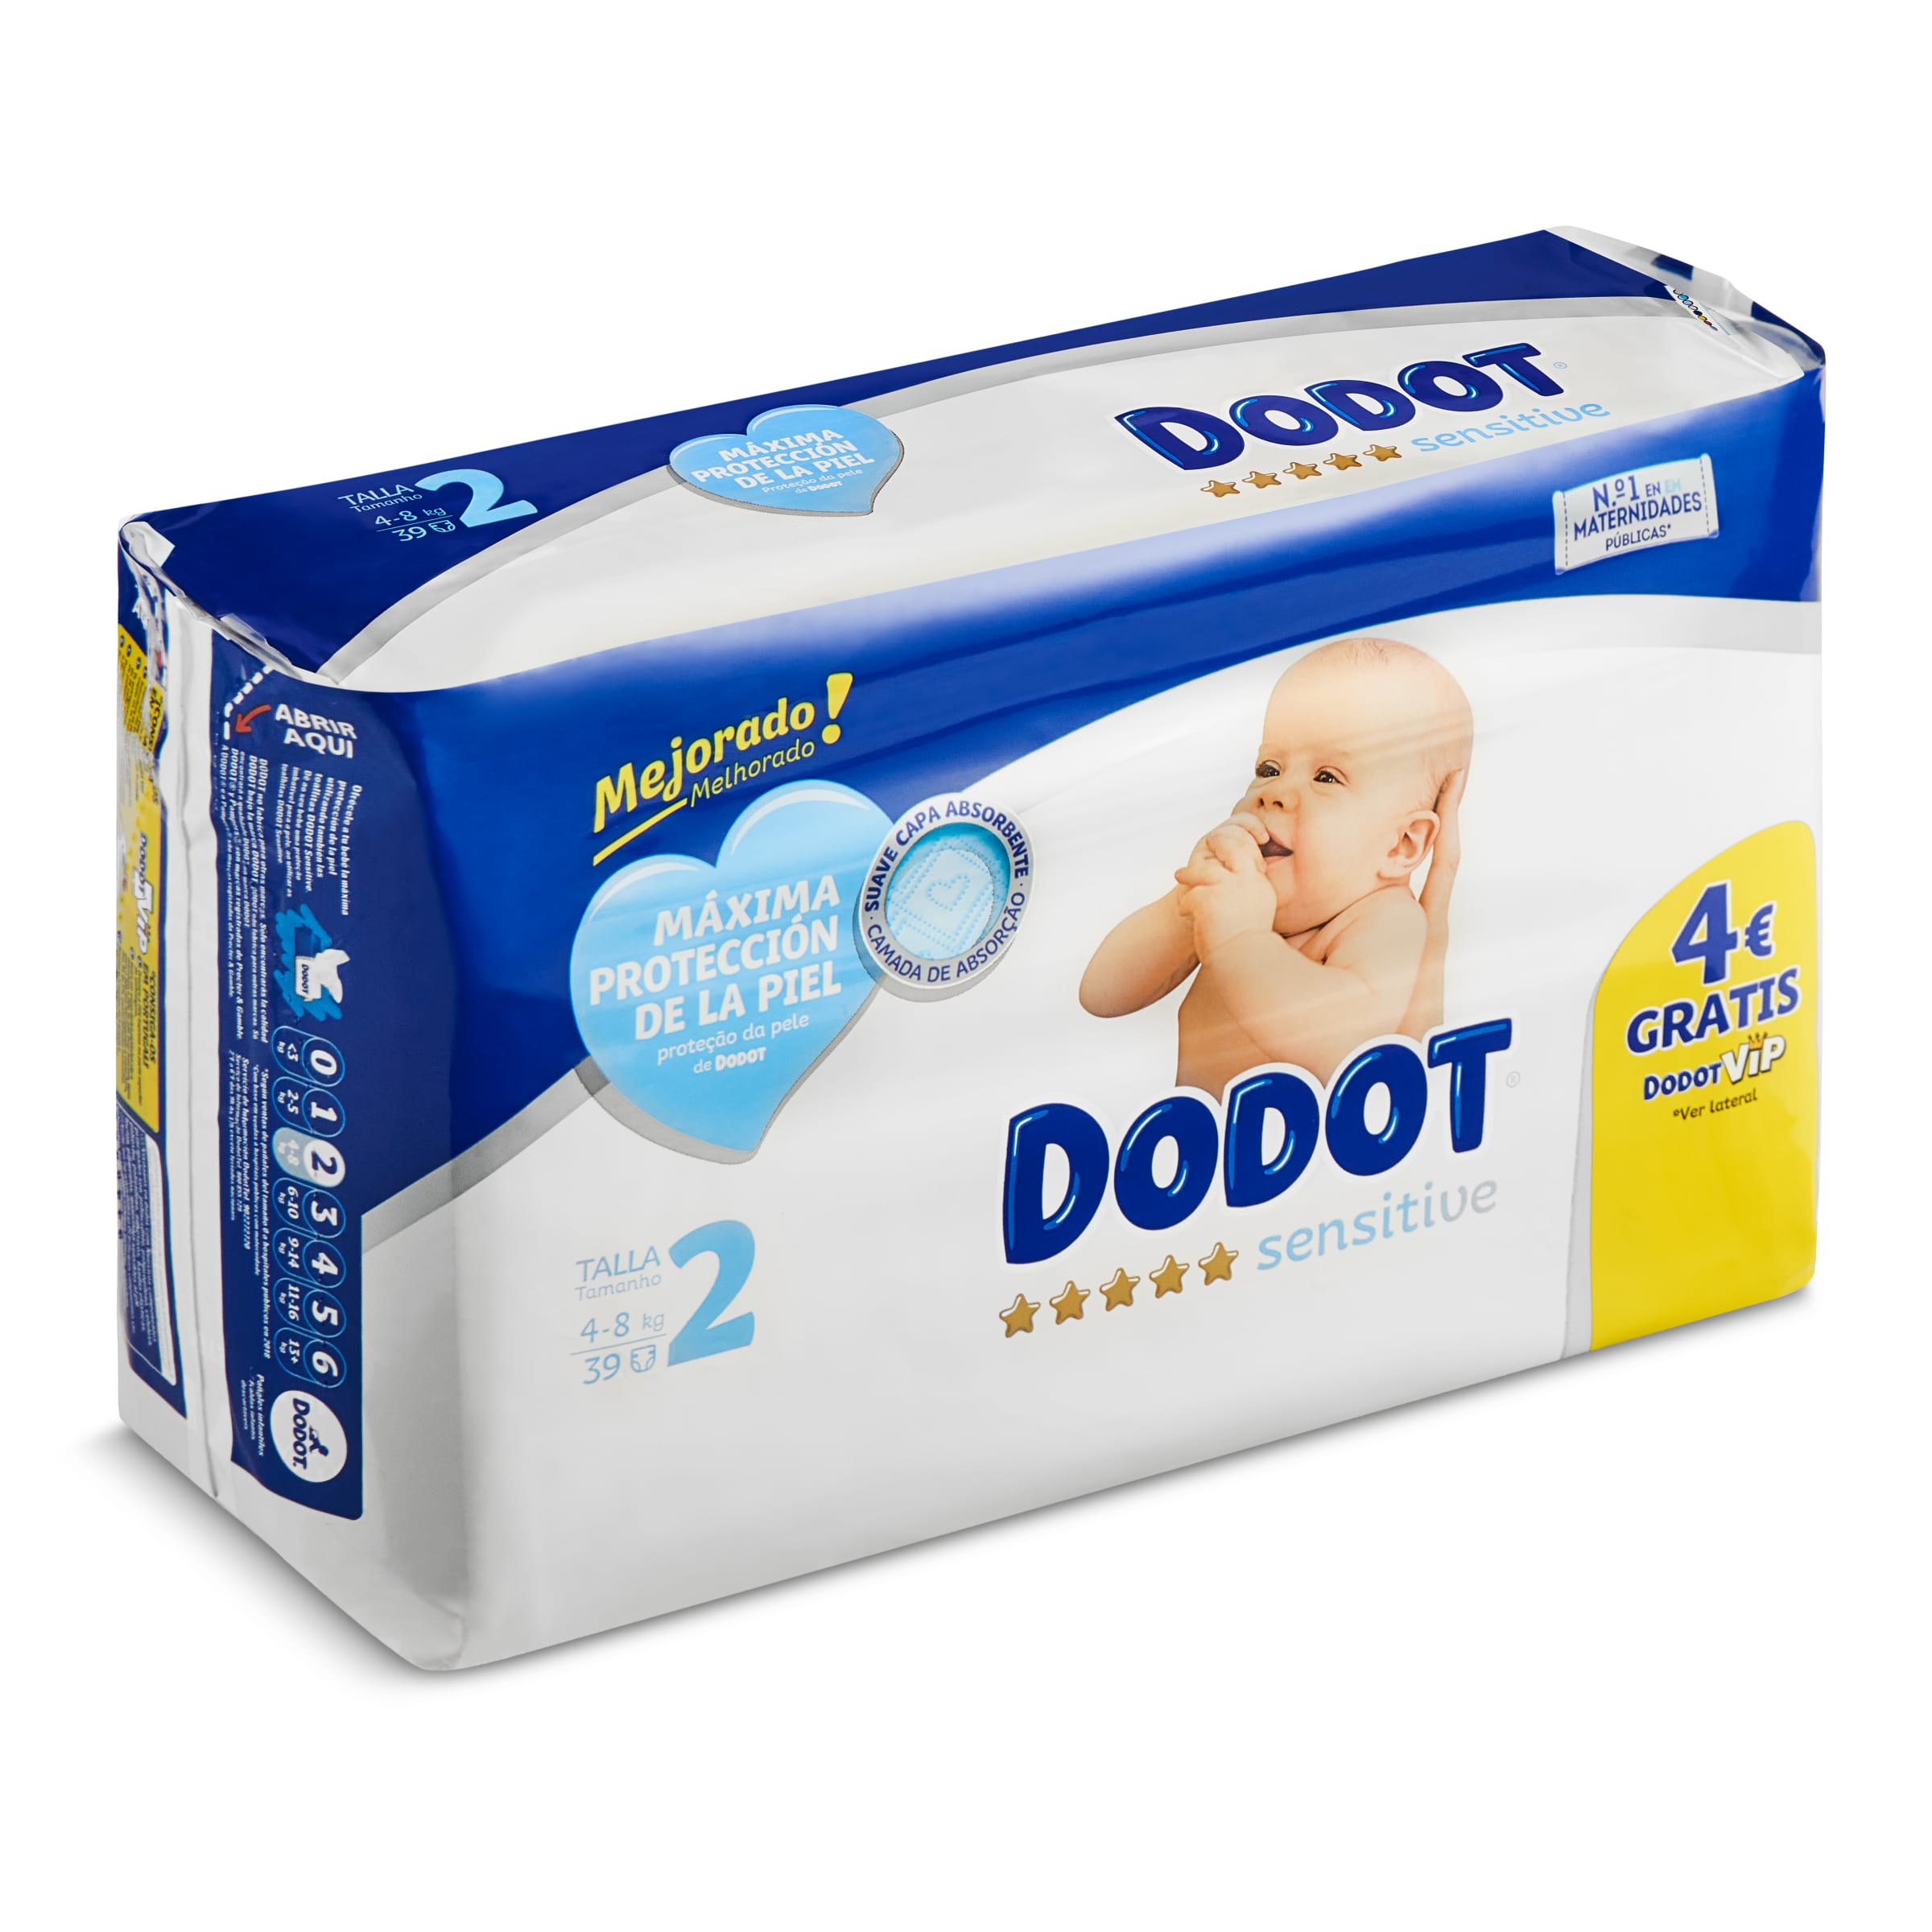 DODOT Sensitive pañales recién nacido 4-8 kgs talla 2 paquete 39 uds |  preciosdelsuper.es